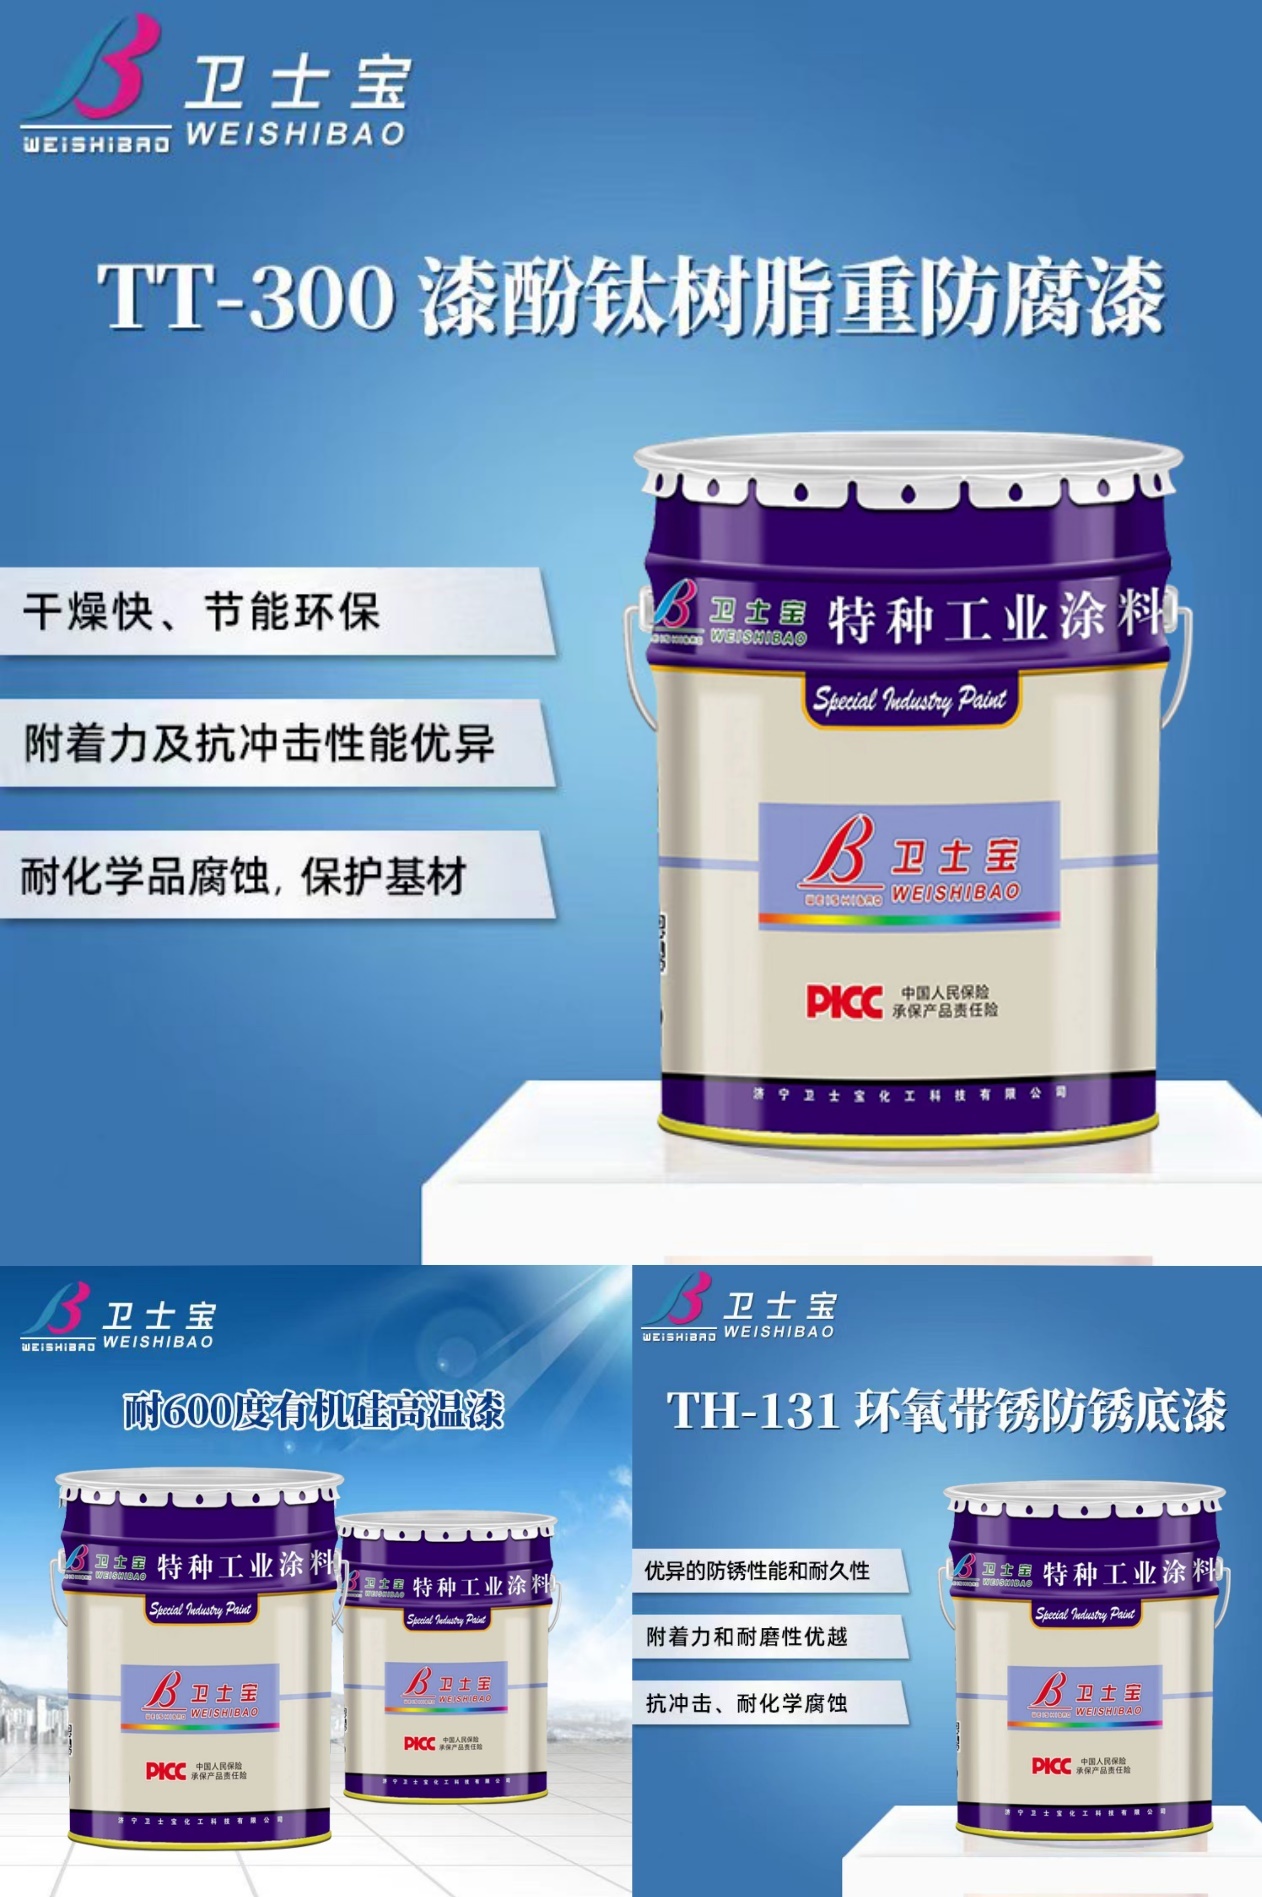 中国人保为卫士宝化工承保产品责任险，为消费者保驾护航！